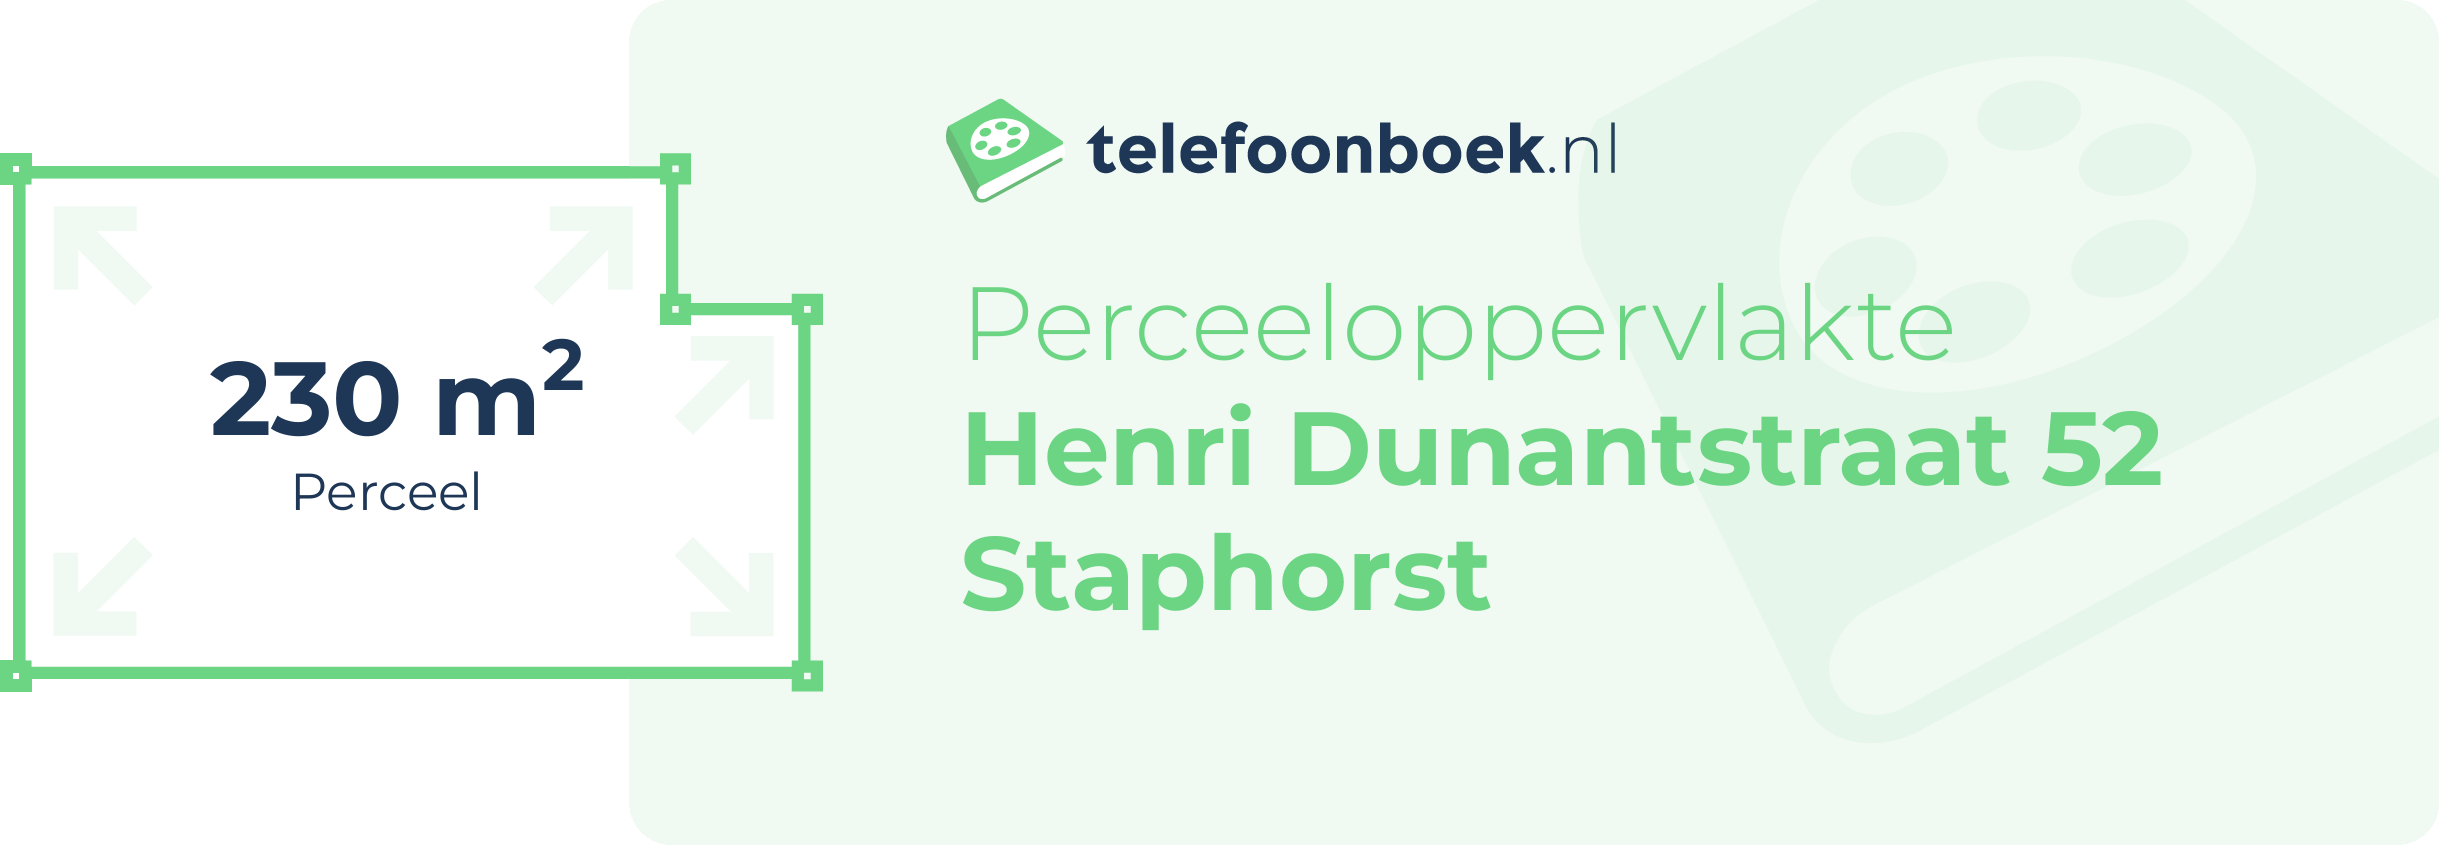 Perceeloppervlakte Henri Dunantstraat 52 Staphorst